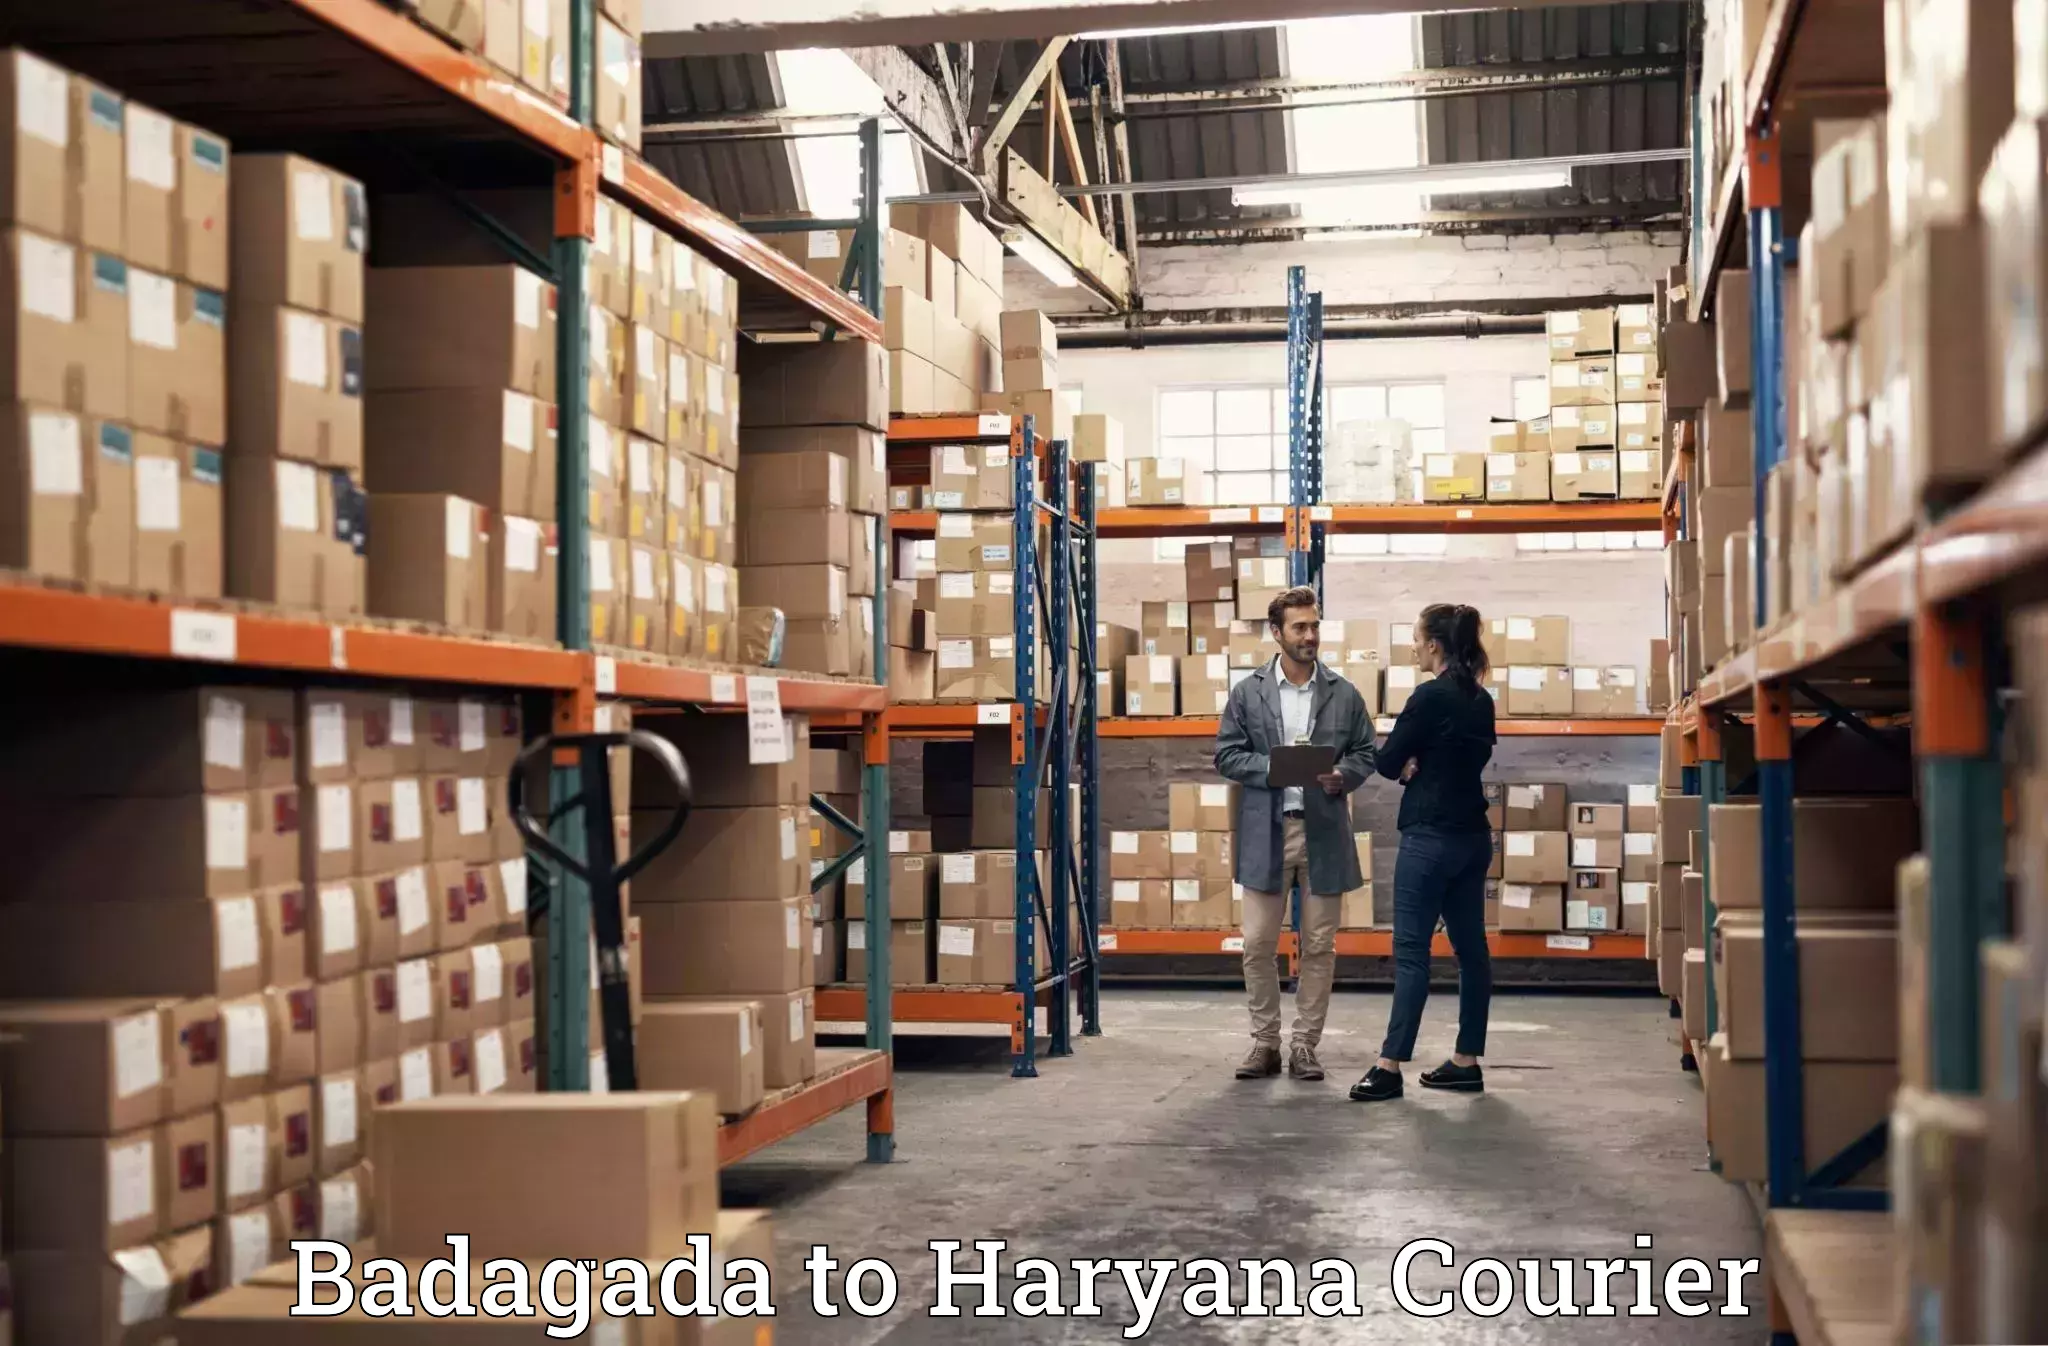 Specialized furniture moving Badagada to Chirya